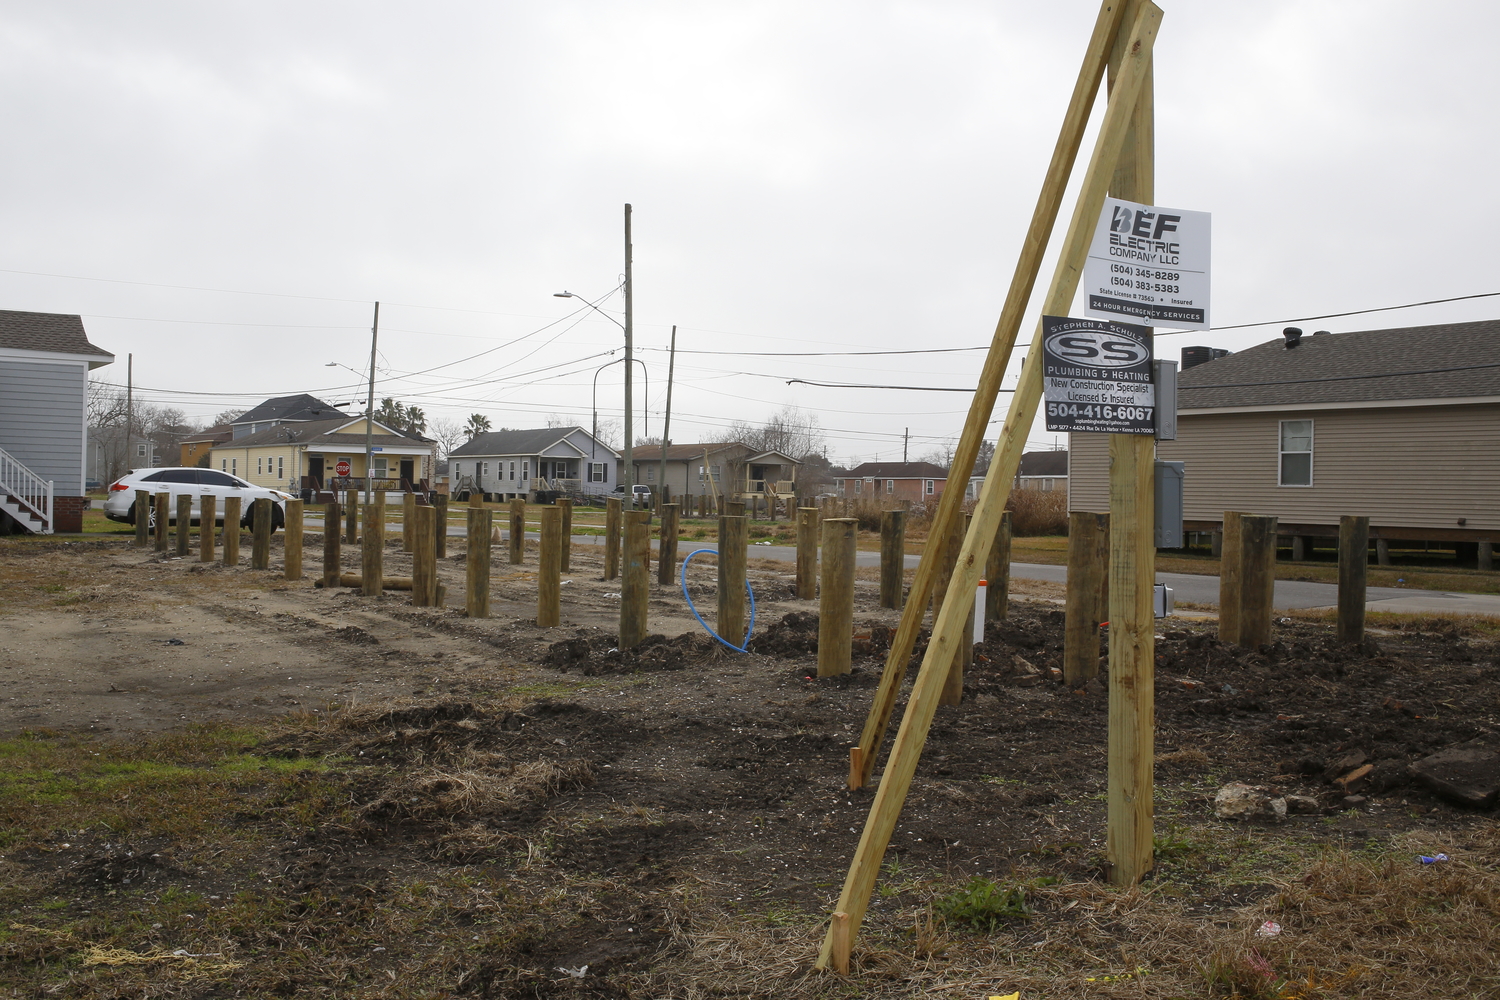 Constructions des fondations sur pilotis d’une nouvelle maison © Globe Reporters